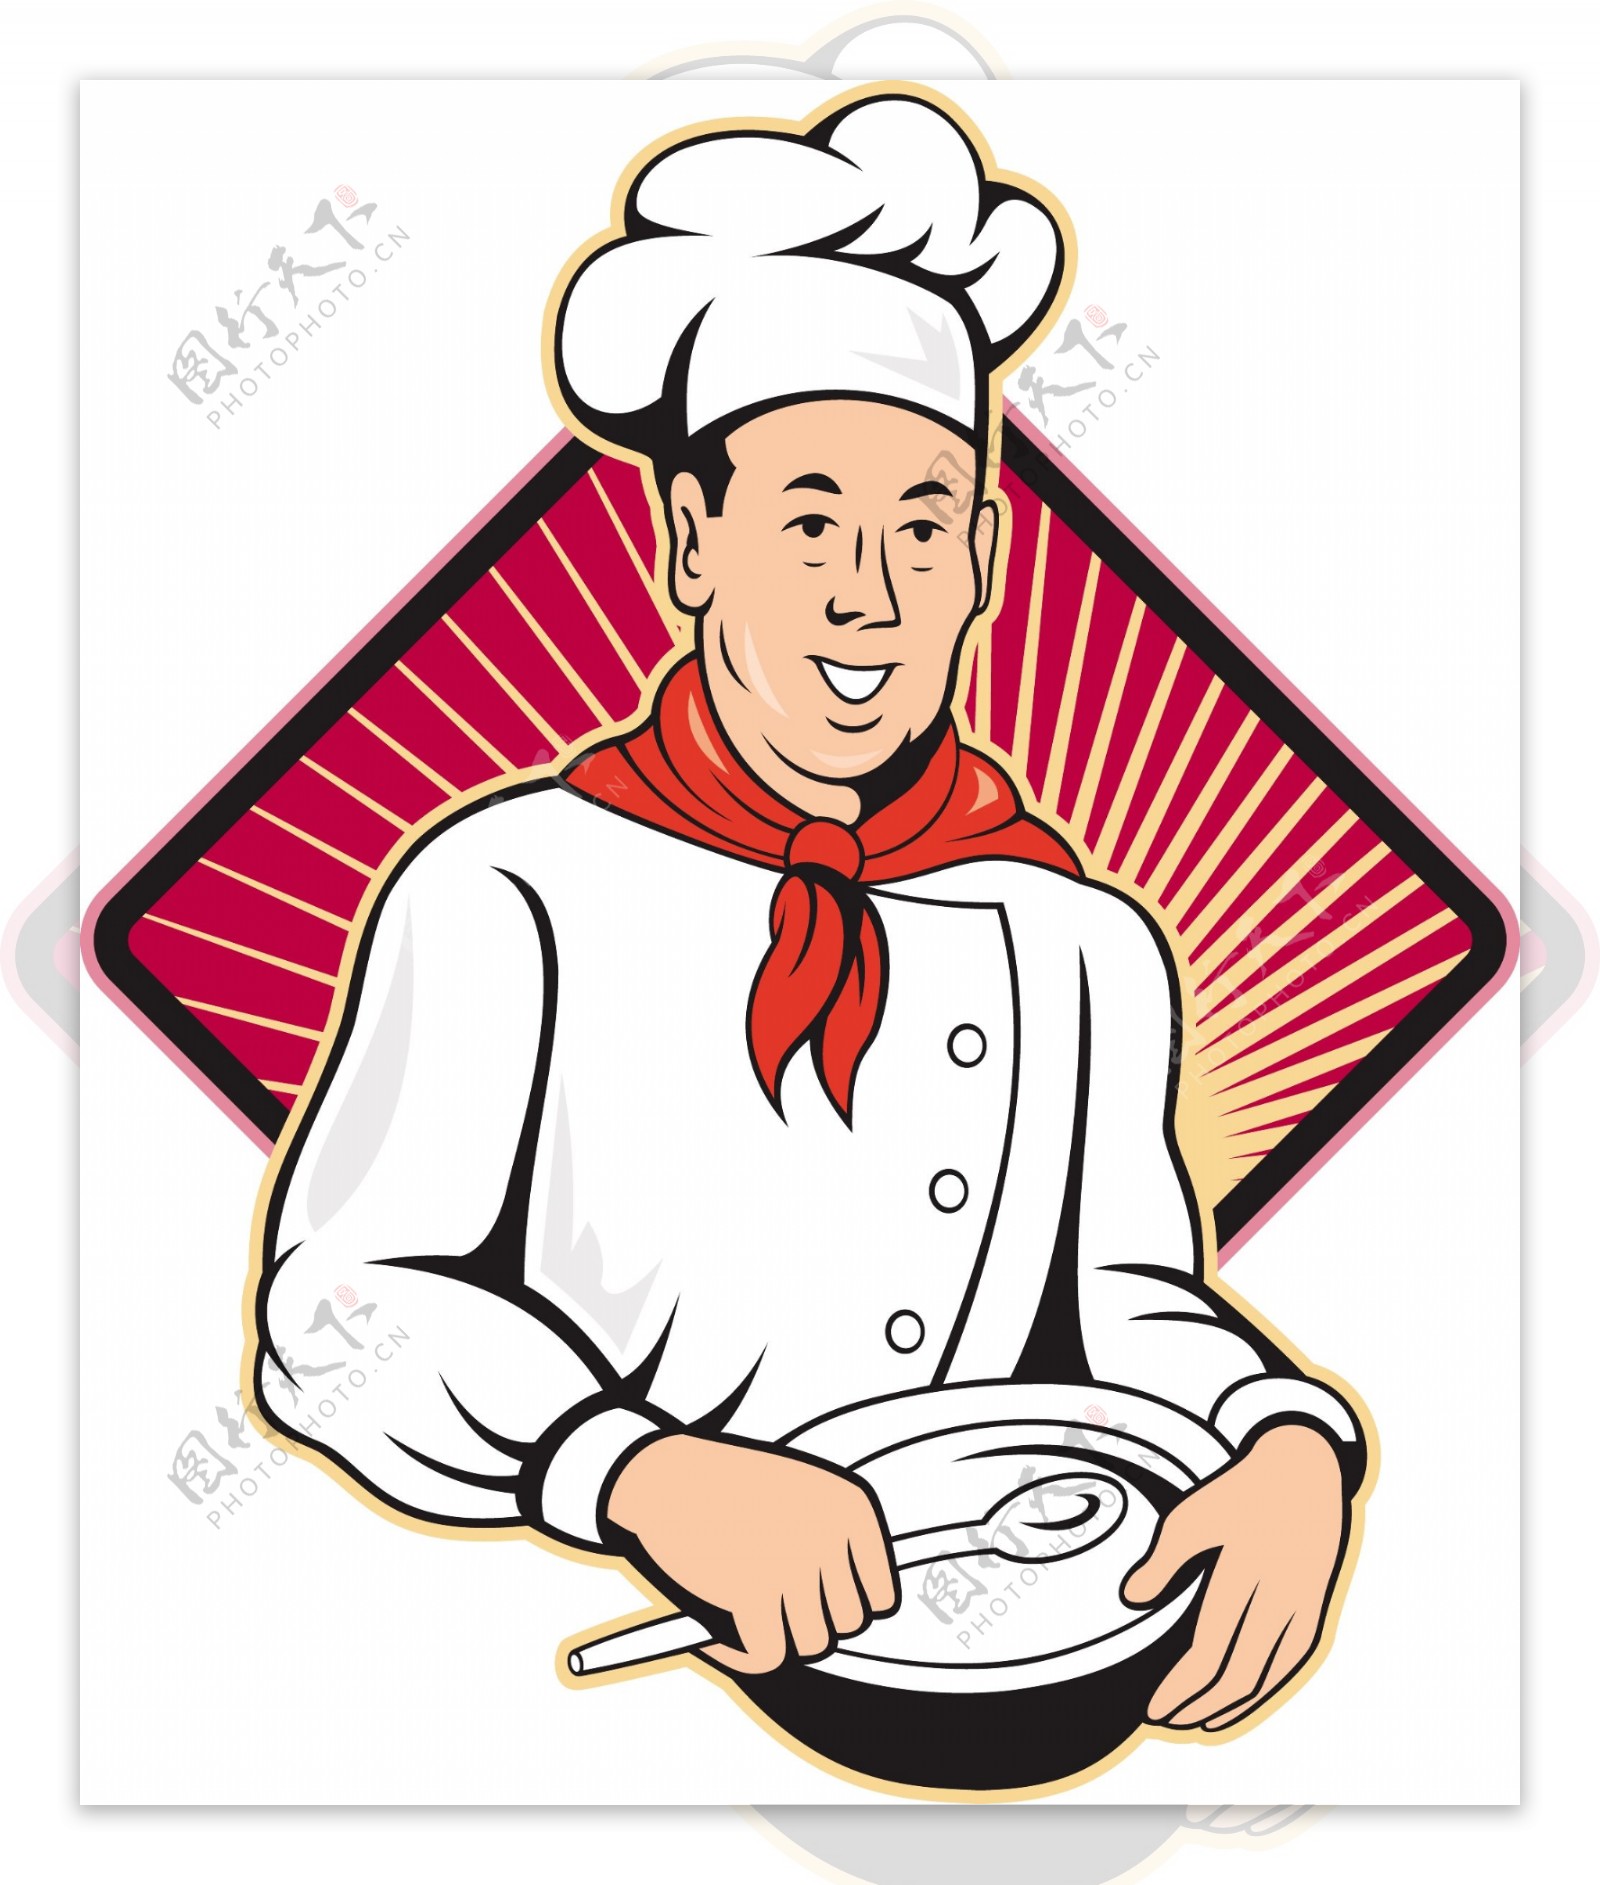 厨师厨师贝克搅拌碗卡通